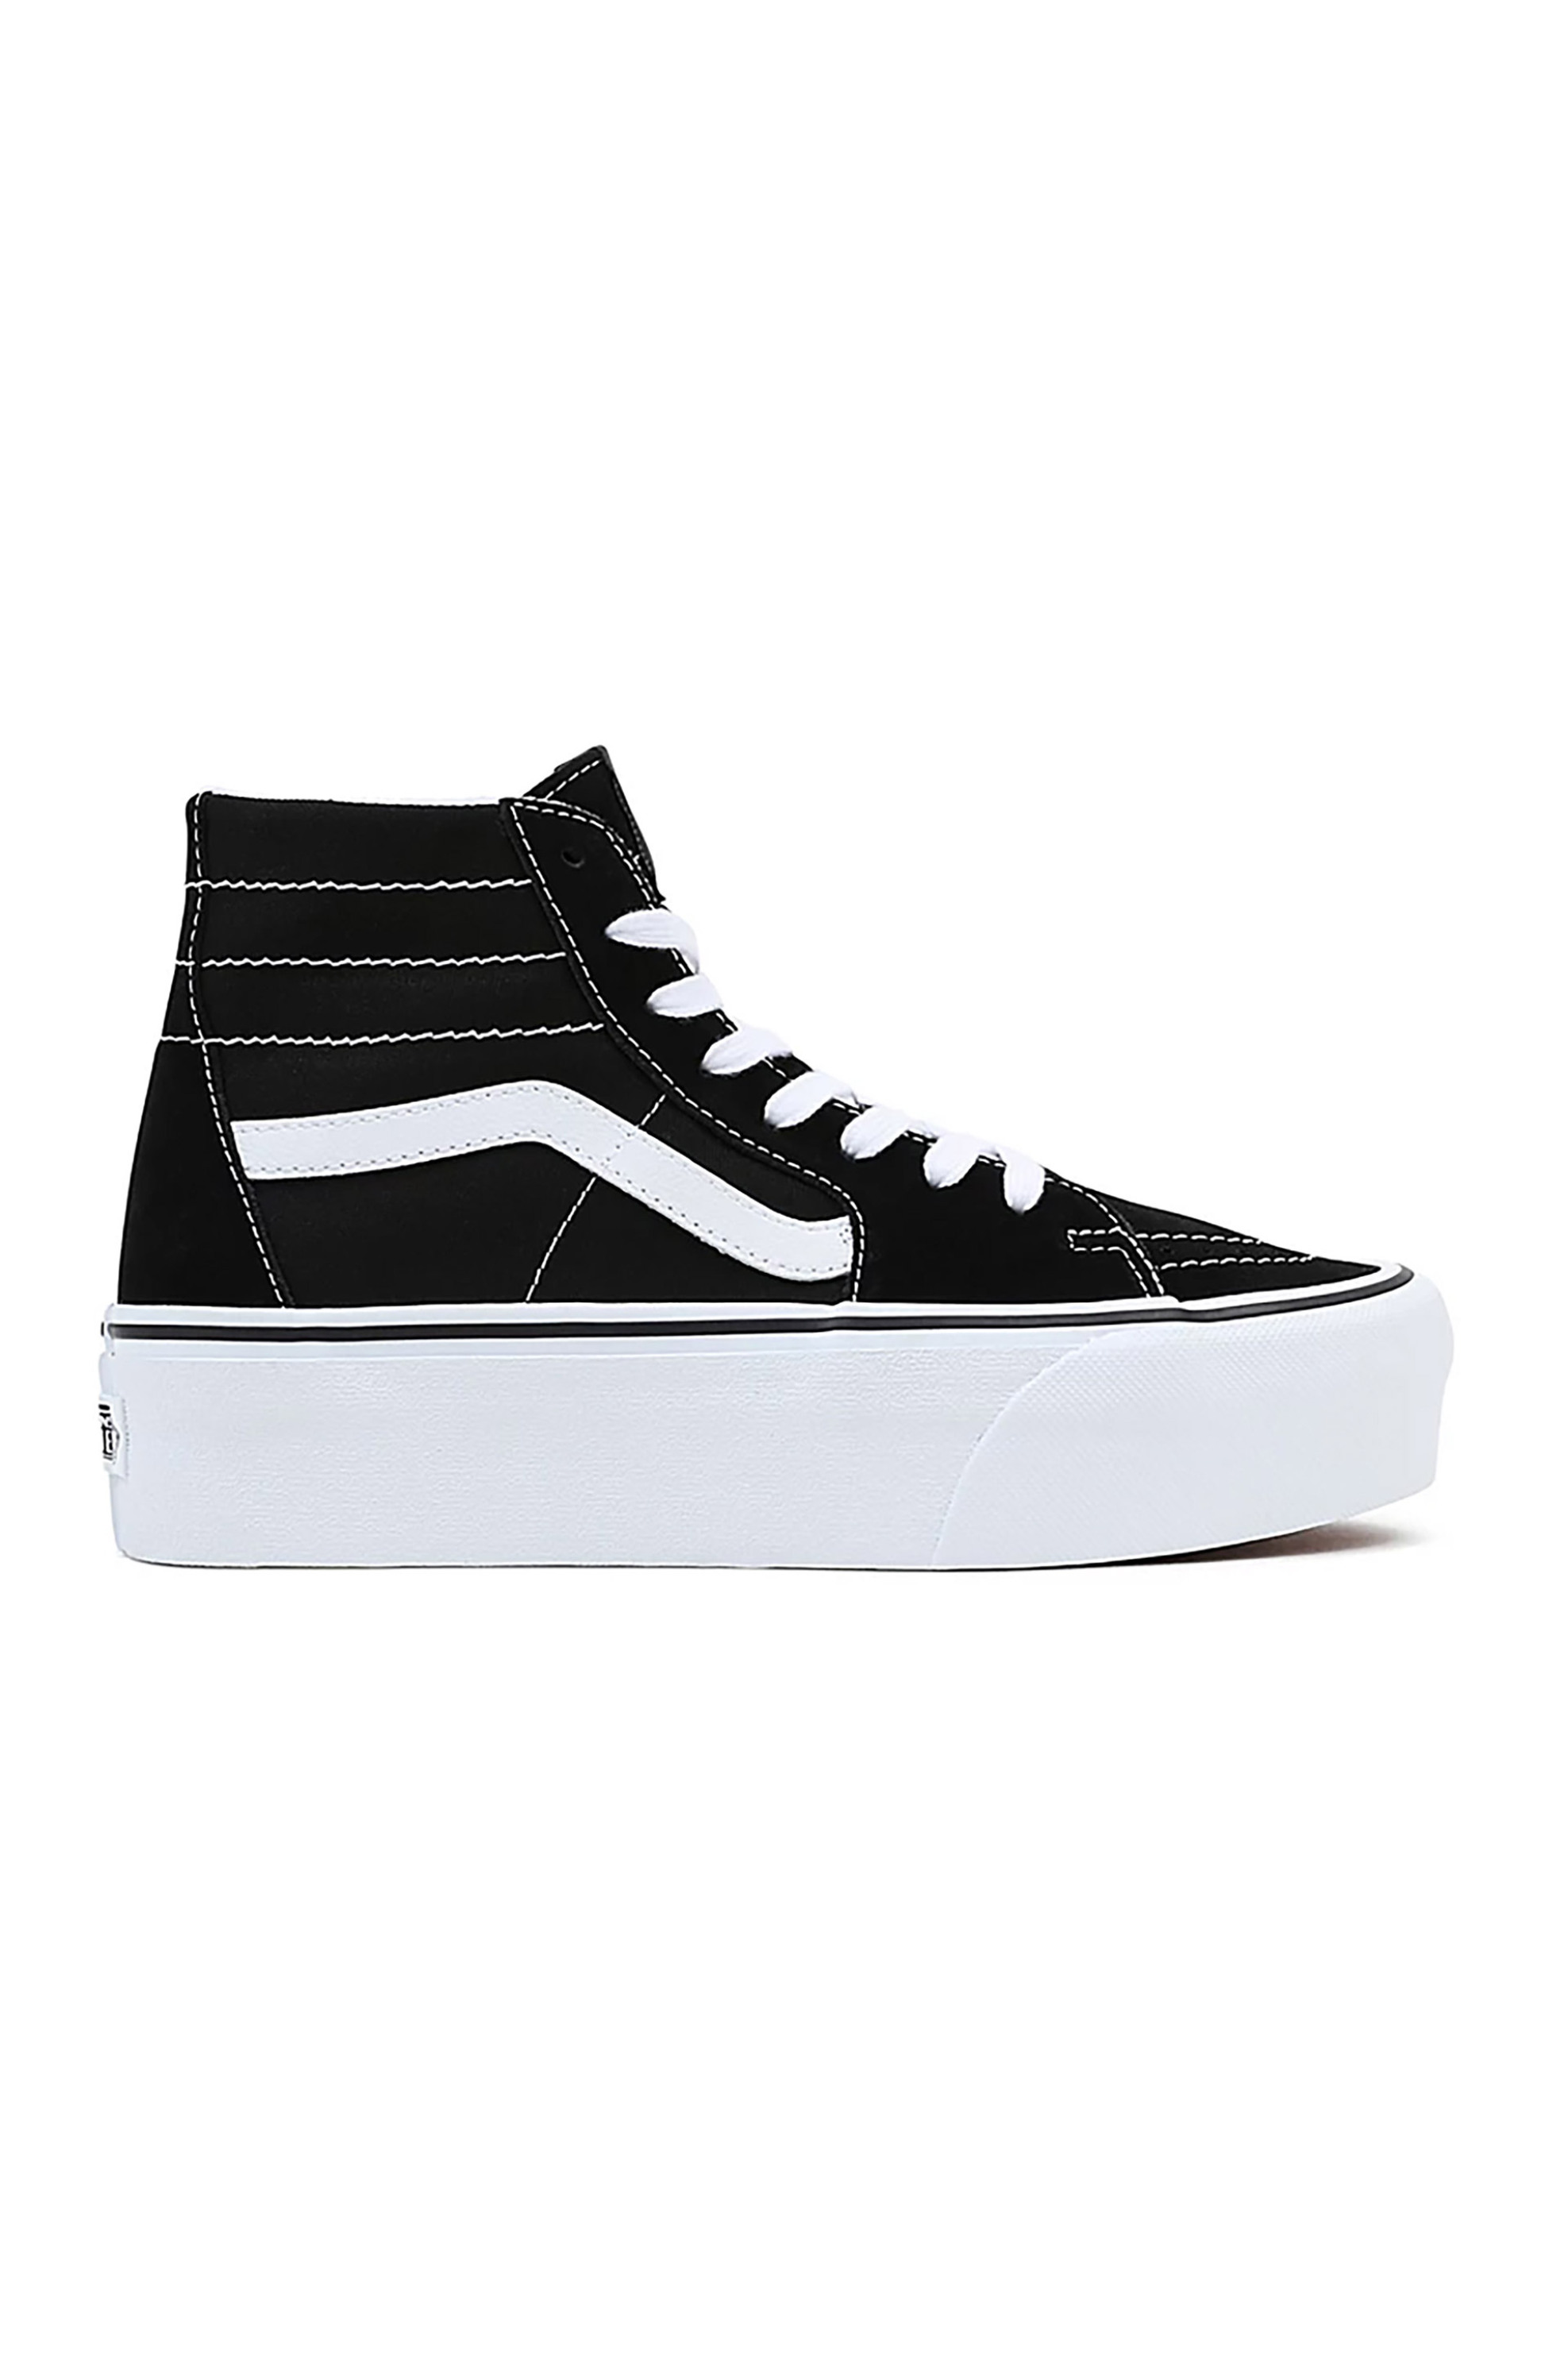 Ανδρική Μόδα > Ανδρικά Παπούτσια > Ανδρικά Sneakers Vans unisex sneakers με contrast ραφές και logo patch στην γλώσσα "Sk8" - VN0A5JMKBMX1 Μαύρο